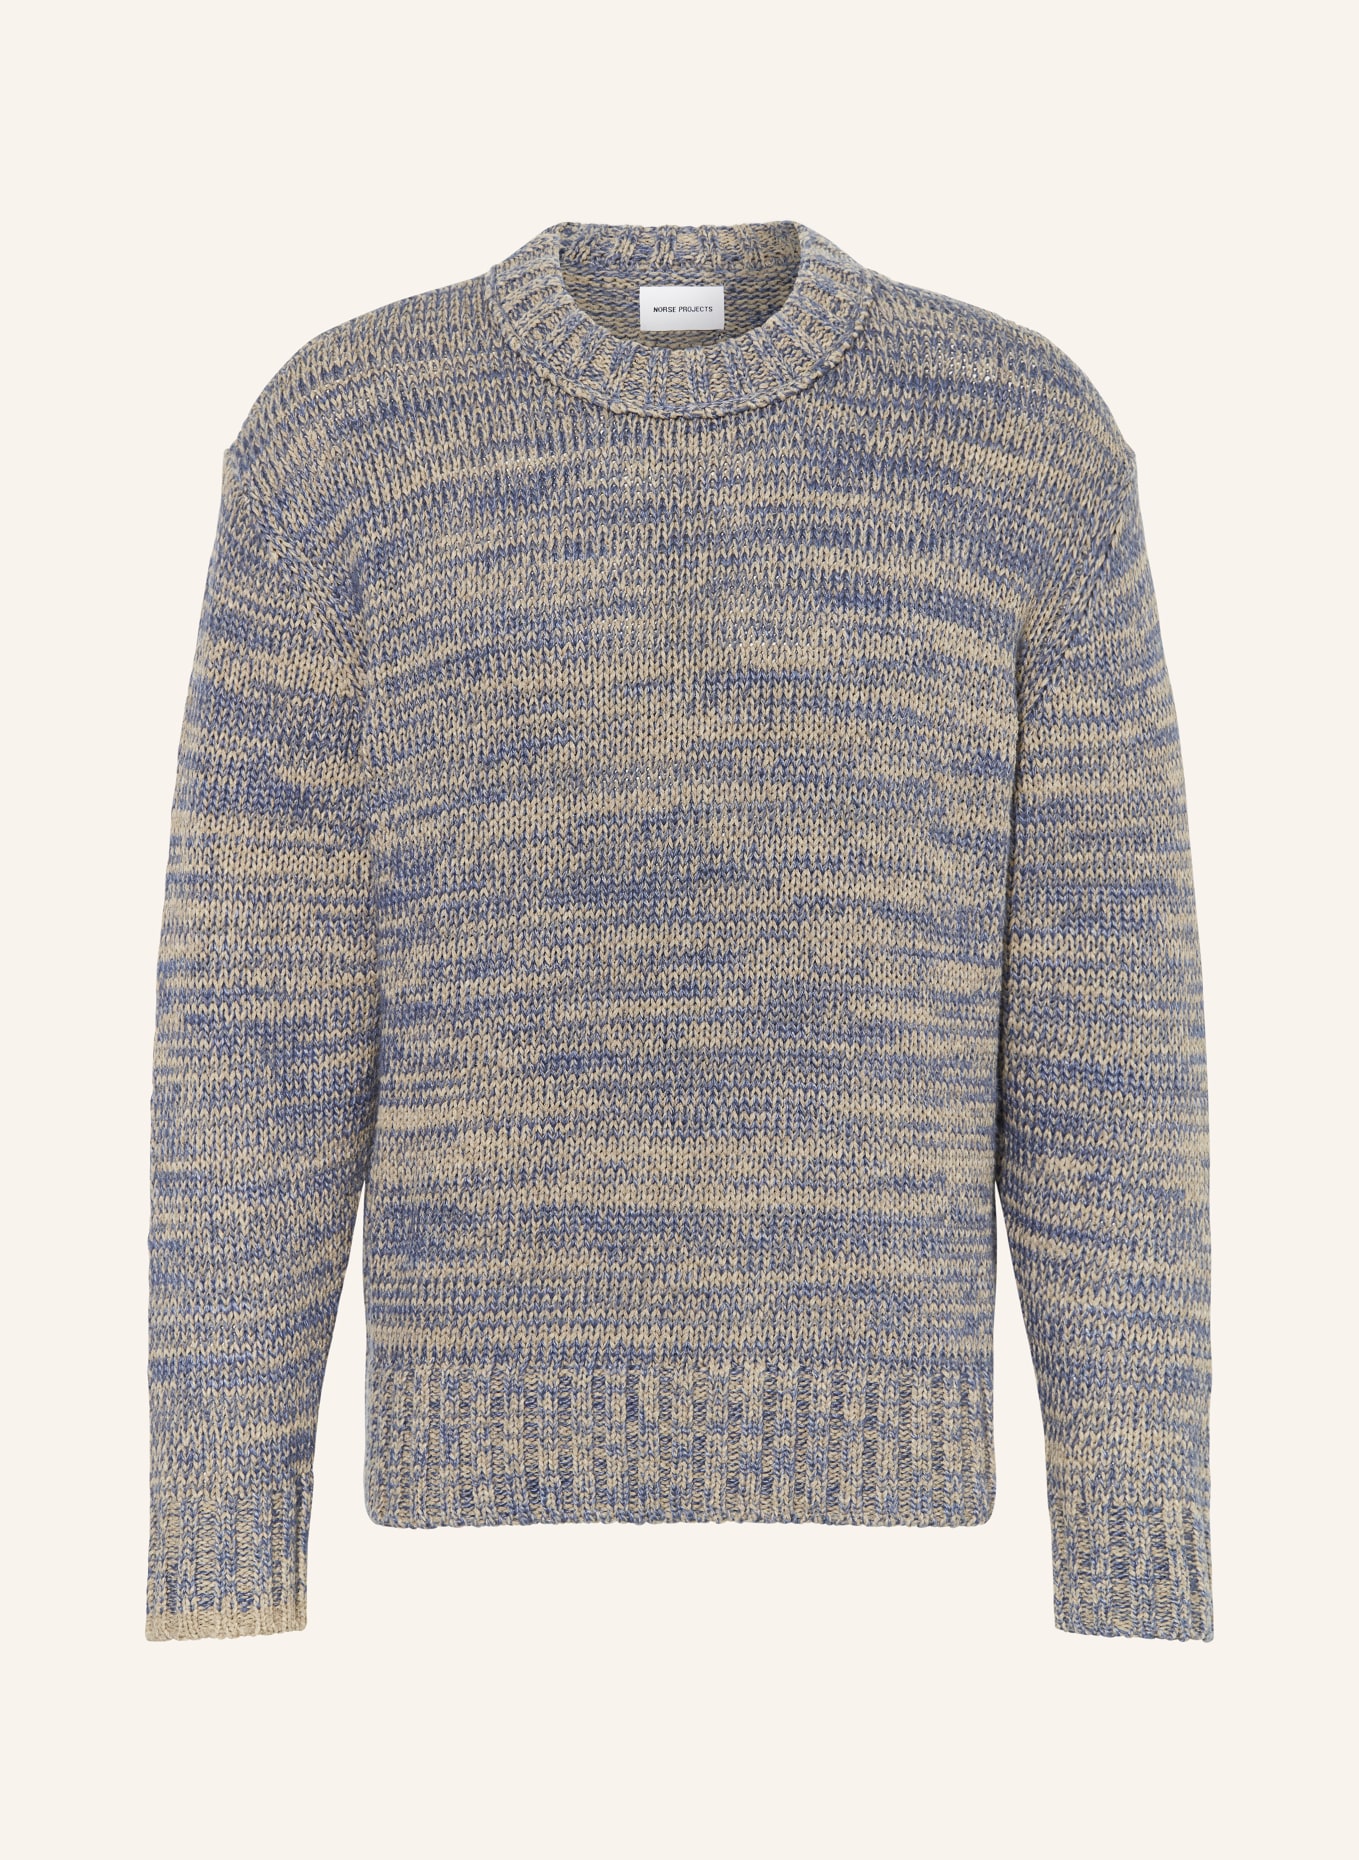 NORSE PROJECTS Pullover, Farbe: BLAU/ GRAU (Bild 1)